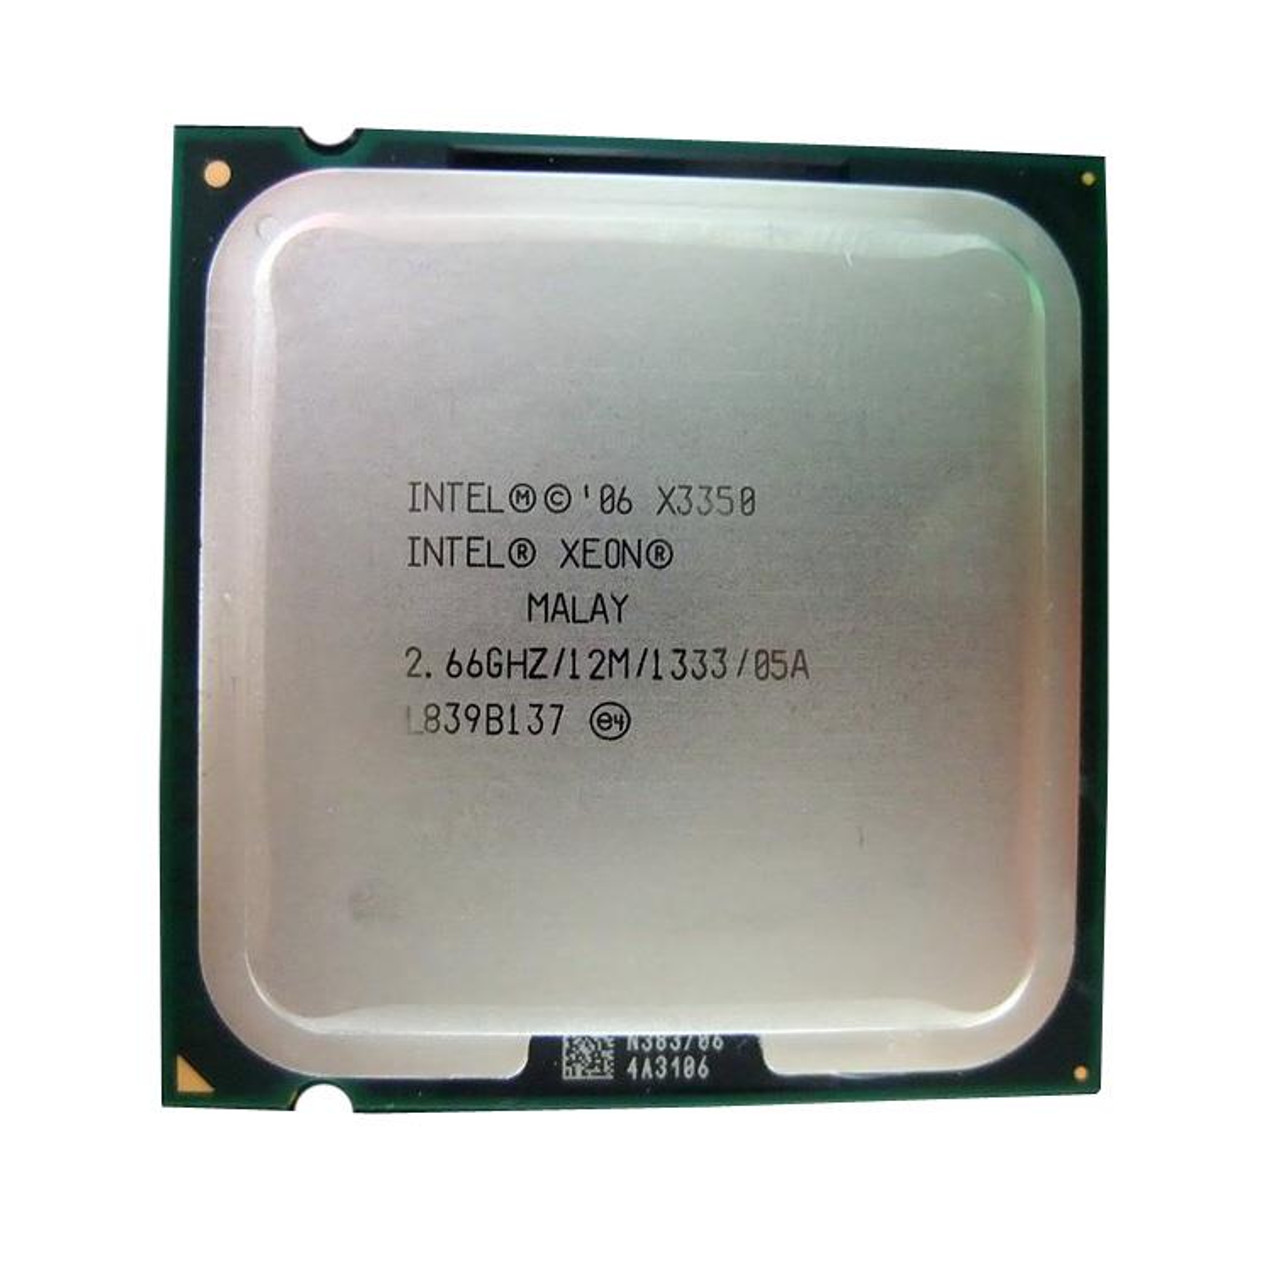 IBM 2.66GHz 1333MHz FSB 12MB L2 Cache Socket LGA775 Intel Xeon X3350 Quad-Core Processor Upgrade